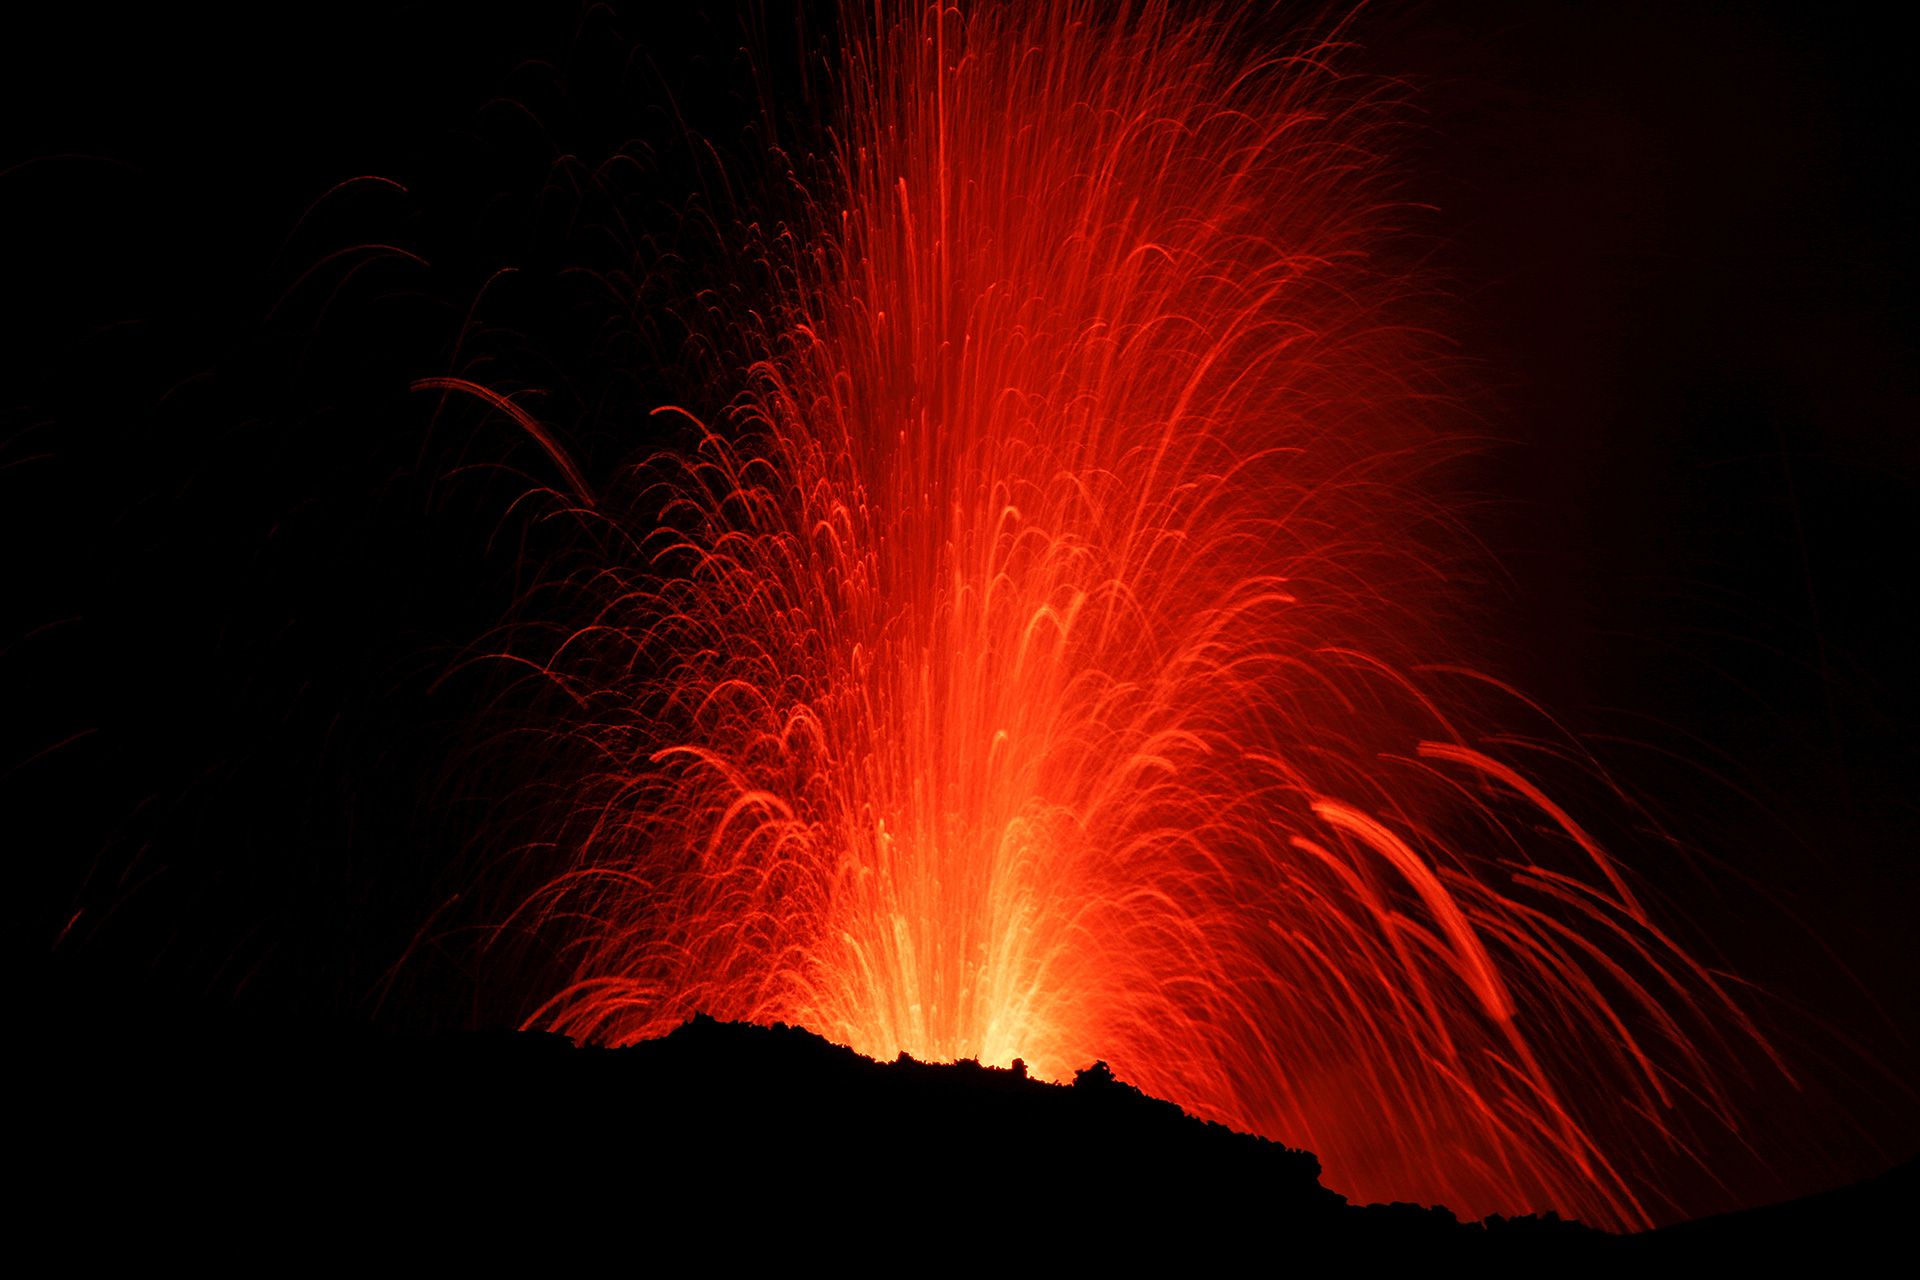 volcan-etna-entra-en-erupcion